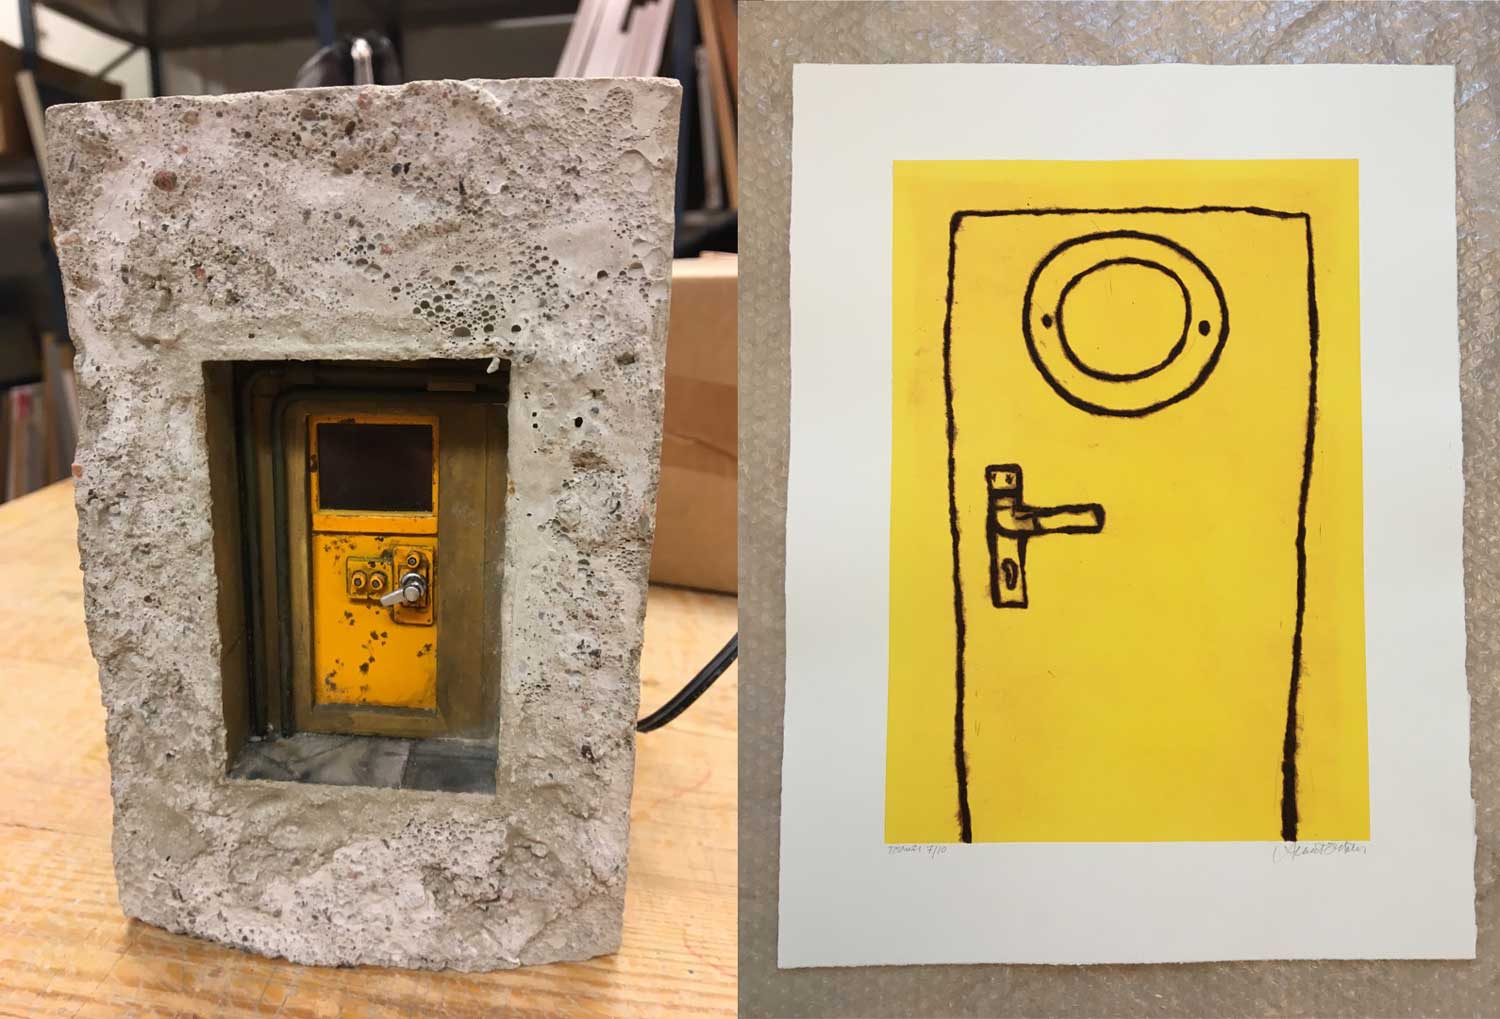 Två foton av konstverk. Till höger ett tittskåp av betong. I mitten finns en gul plåtdörr. Två mörkfärgade rör går från golv till tak vertikalt bredvid dörren. Ett mörkt, fyrkantigt fönster är högst upp på dörren. Dörren är sliten, smutsig och har rostfläckar. Vänster om handtaget finns en platta med två utstickande rundlar och en platta med liknande rundel är placerat ovan handtaget. Handtaget är kraftigt och kromfärgat. Till vänster ett grafiskt blad. En dörr enkelt tecknat med svarta linjer på gul bakgrund. Den har ett runt fönster, på dess ram syns två prickar, skruvar. Den har ett handtag där skruvarna syns i överkanten av handtagsbrickan med nyckelhålet nedan. Dörren har ingen tröskel utan börjar direkt på nederkanten av papperet.